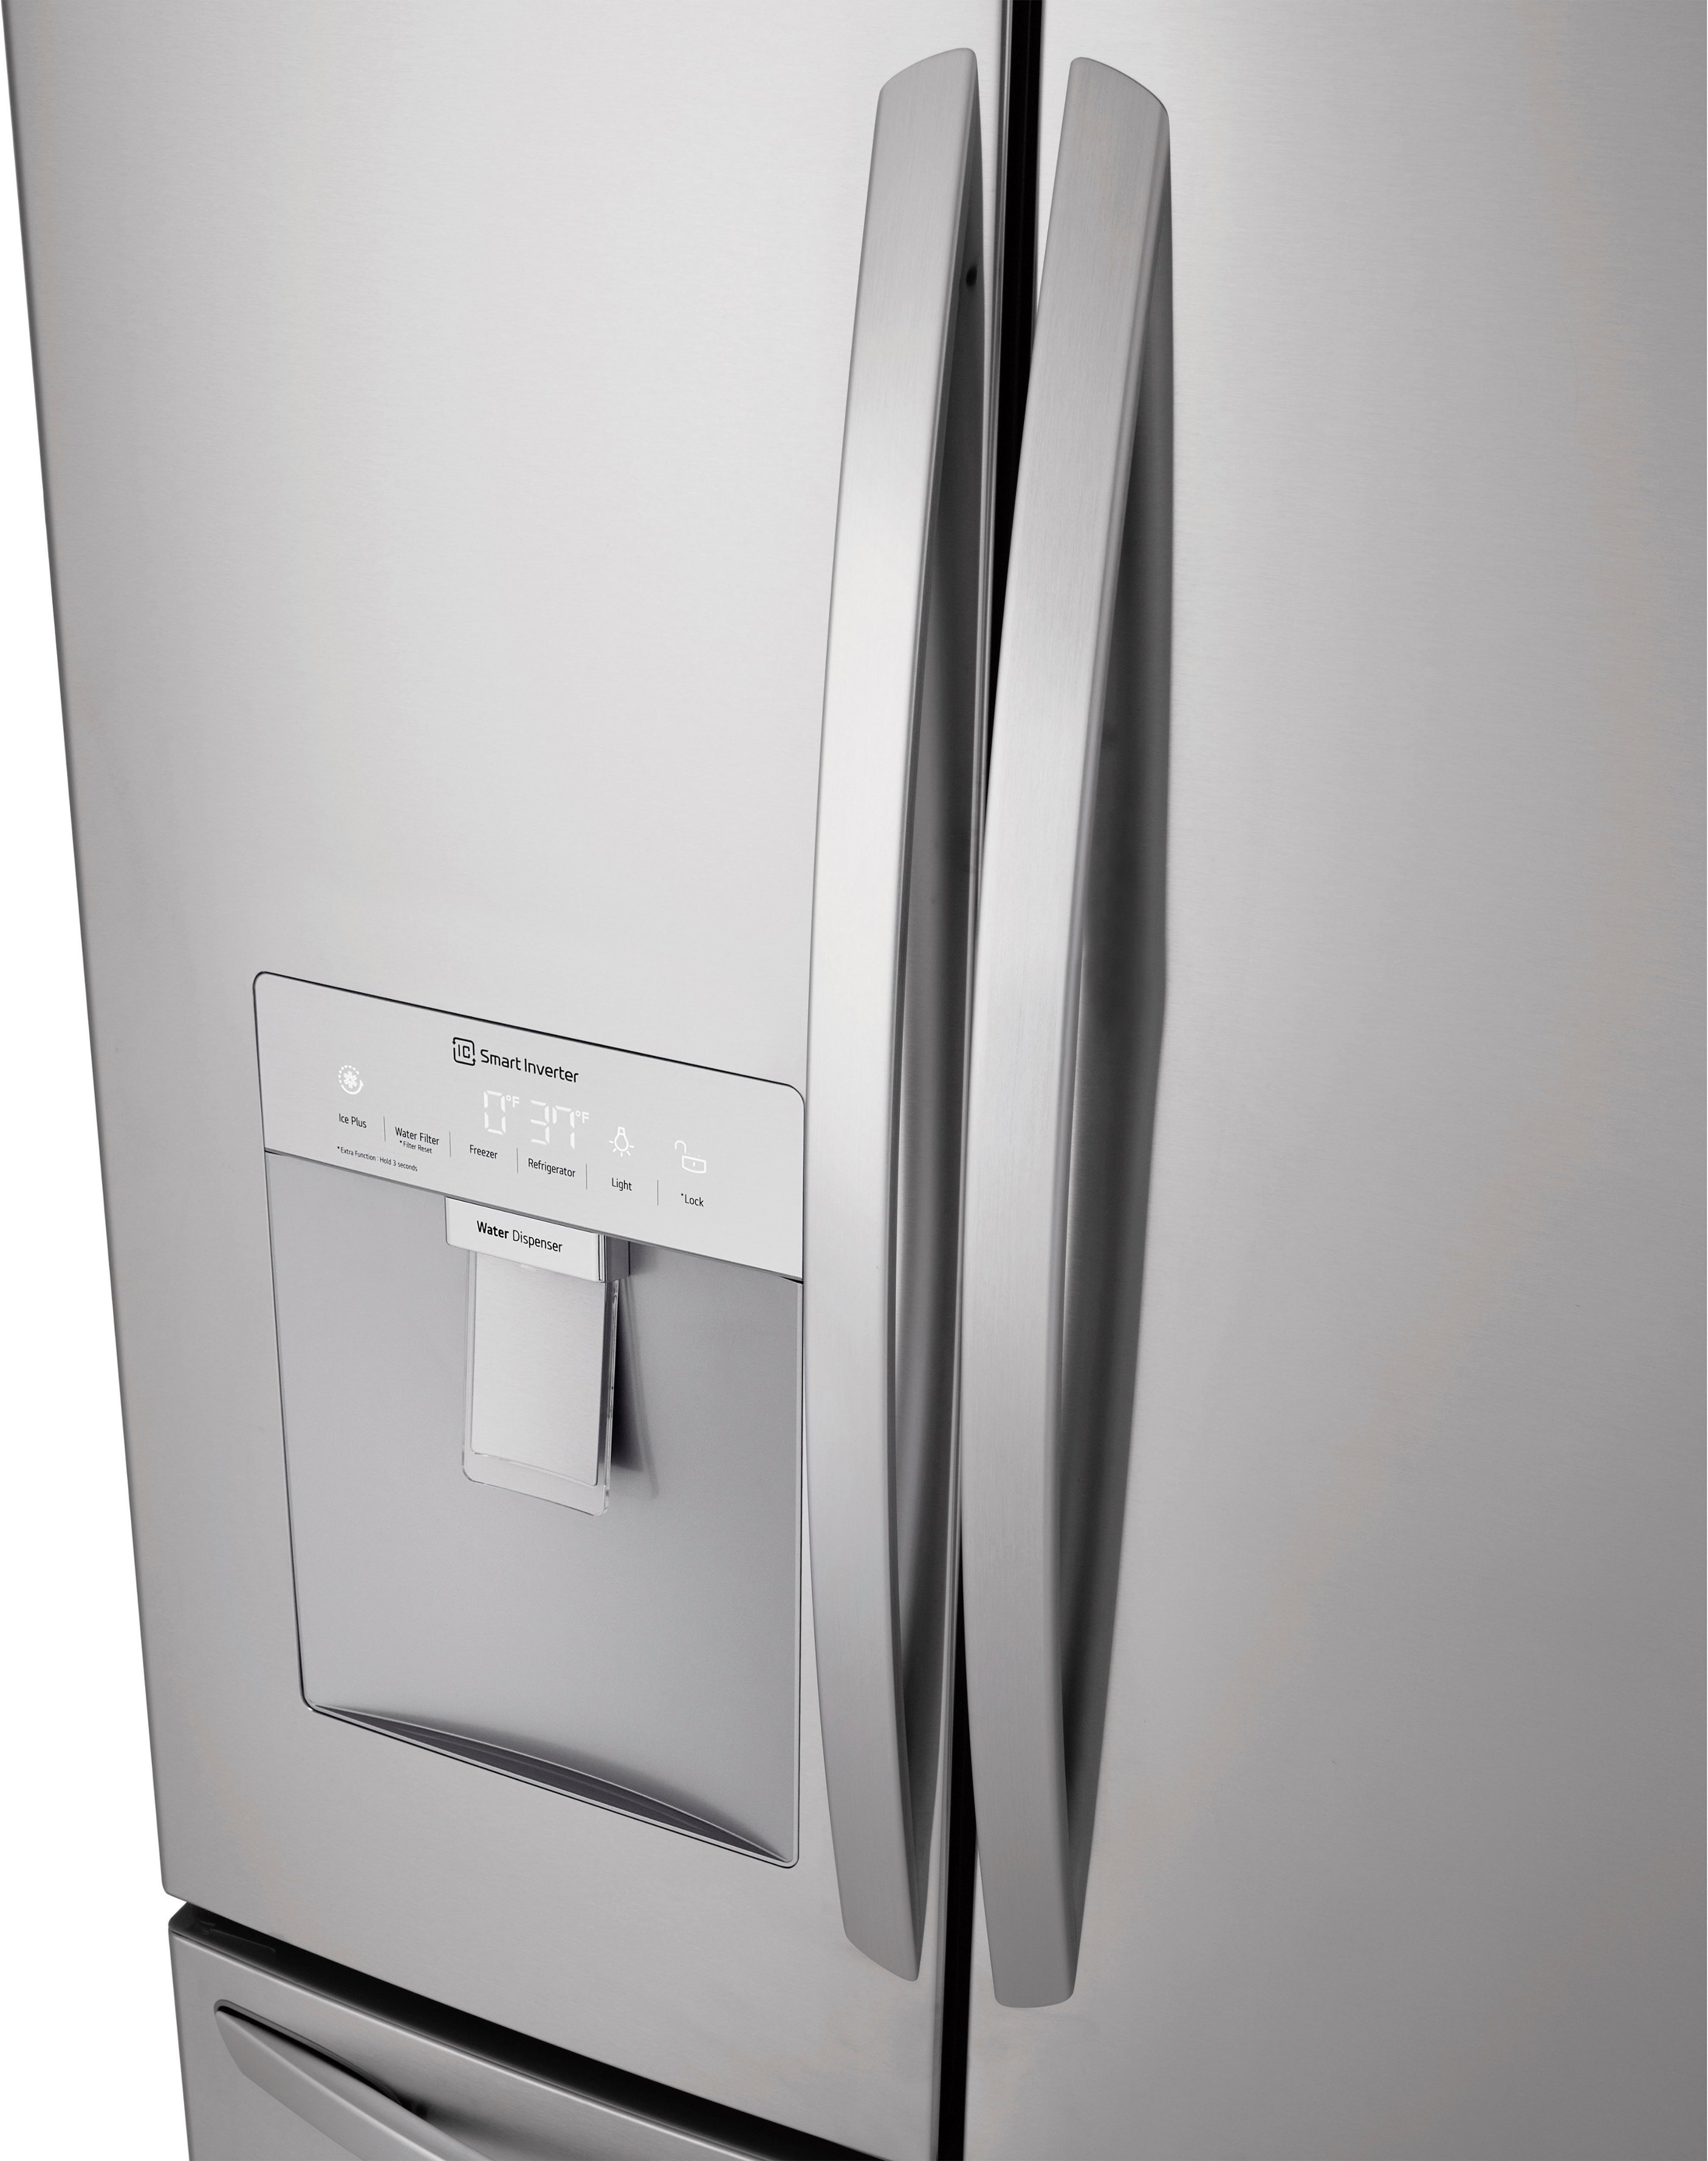 Left View: LG - 28.6 cu ft 4 Door French Door Refrigerator with Water Dispenser - Stainless steel